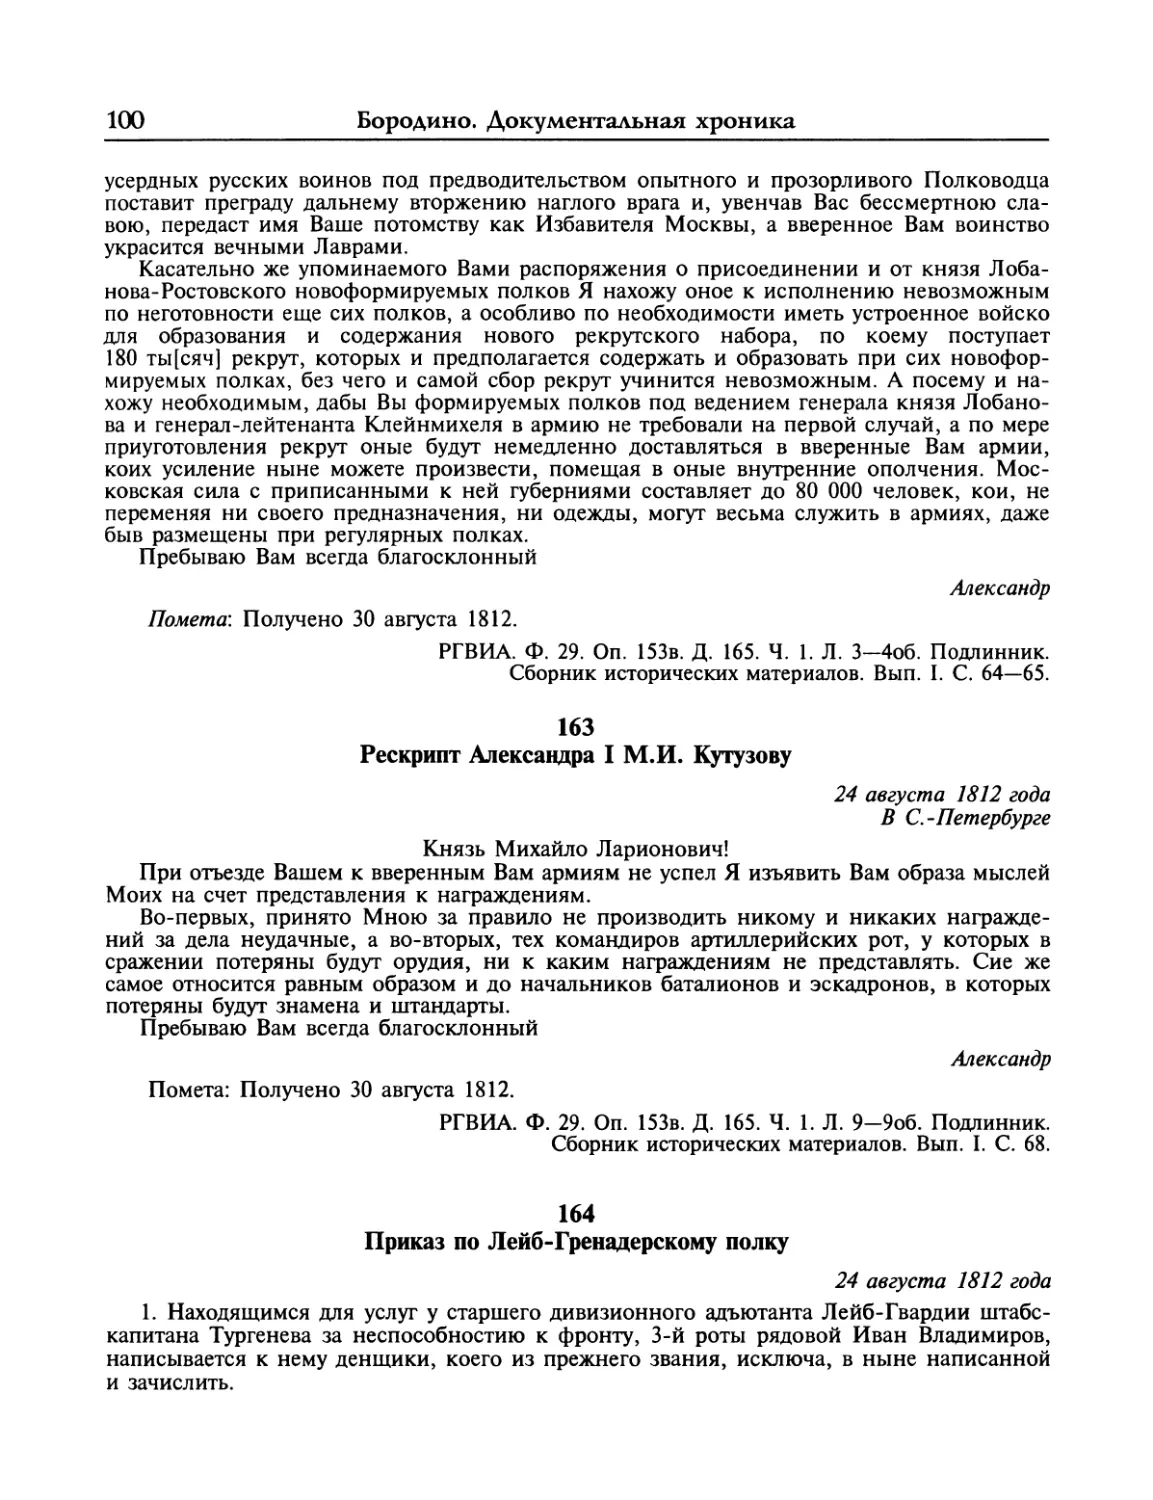 Рескрипт Александра I М.И.Кутузову
Приказ по Лейб-Гренадерскому полку